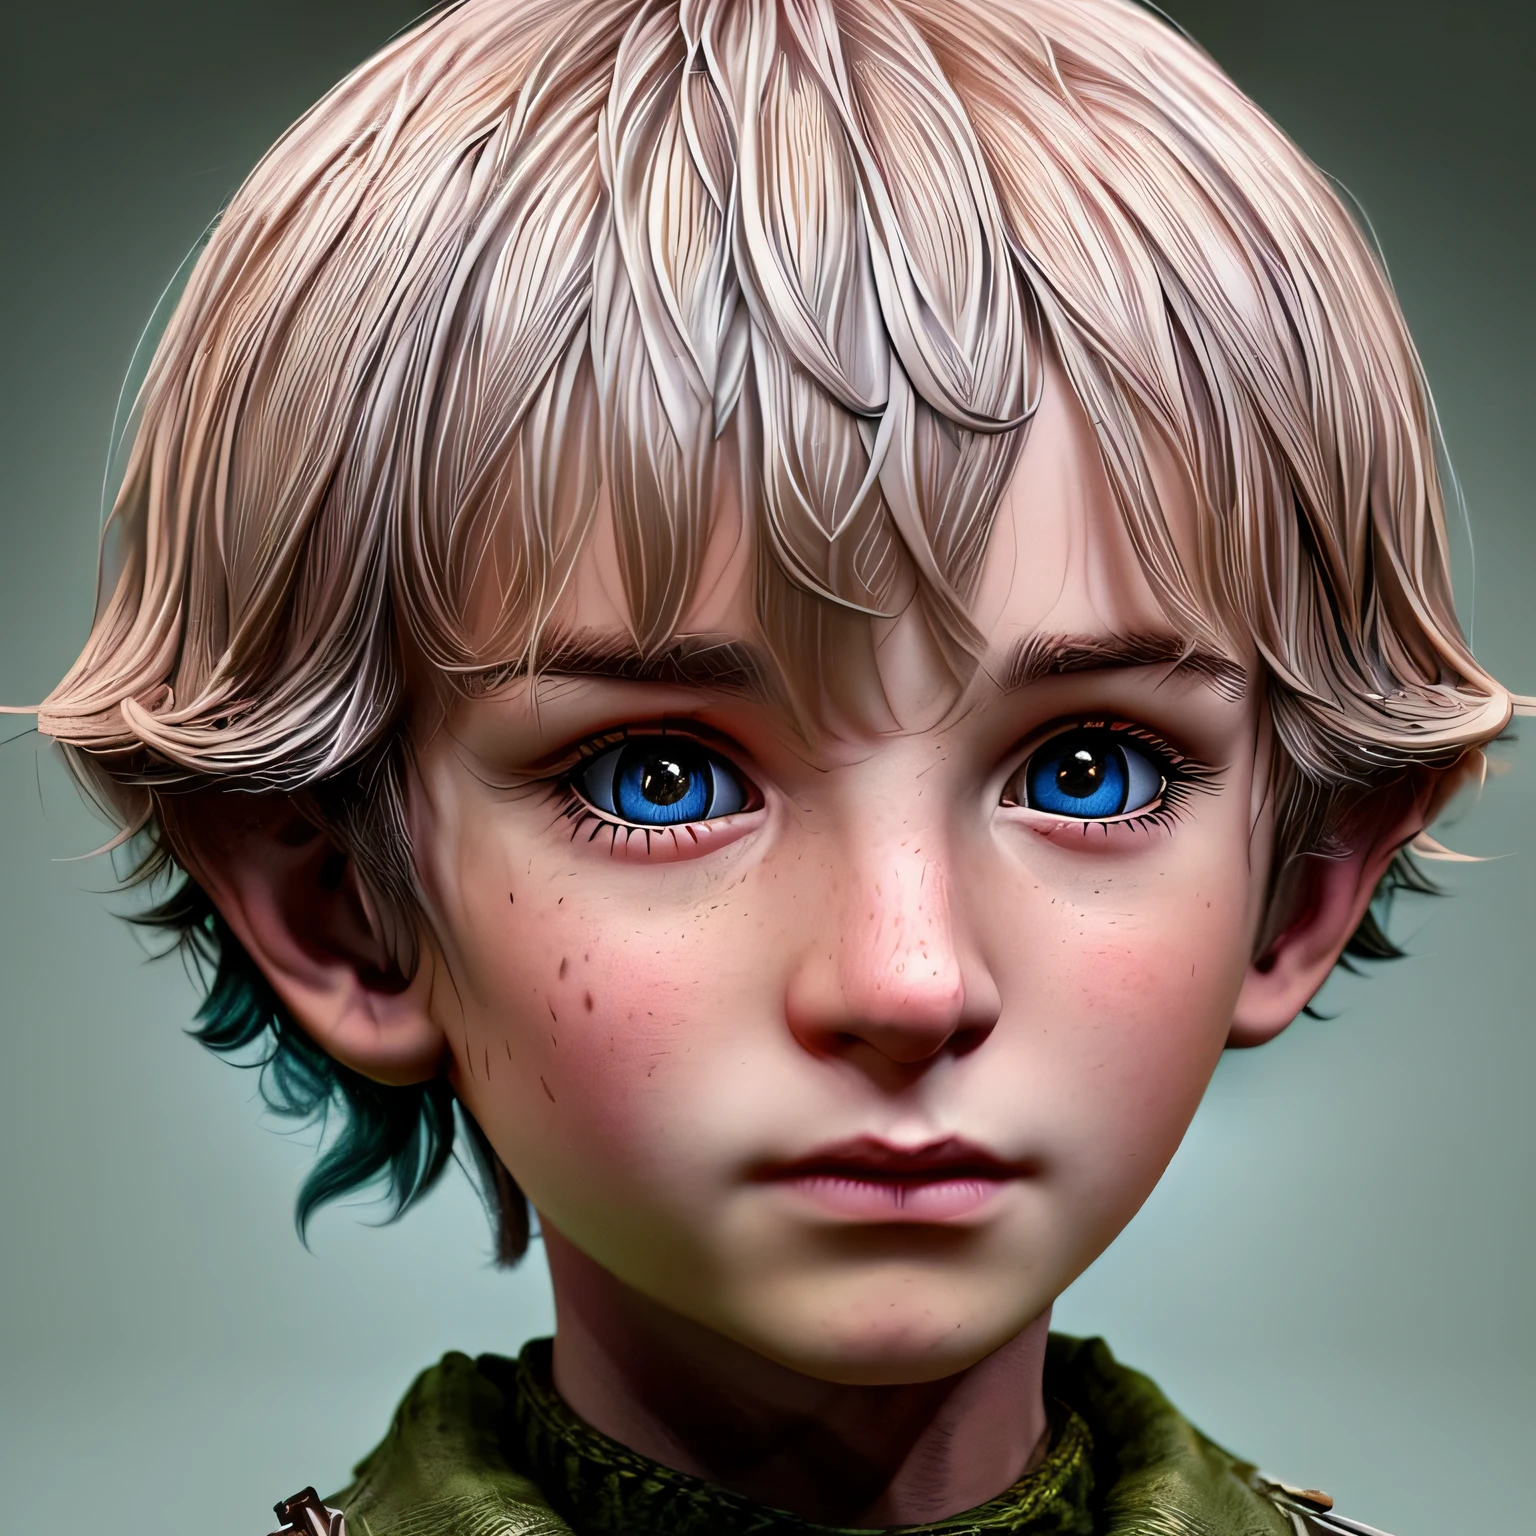 (Abonnieren:1.25), Porträt der süßesten Frodo Beutlin Baby Illustration, artstation, cgi_Animation,